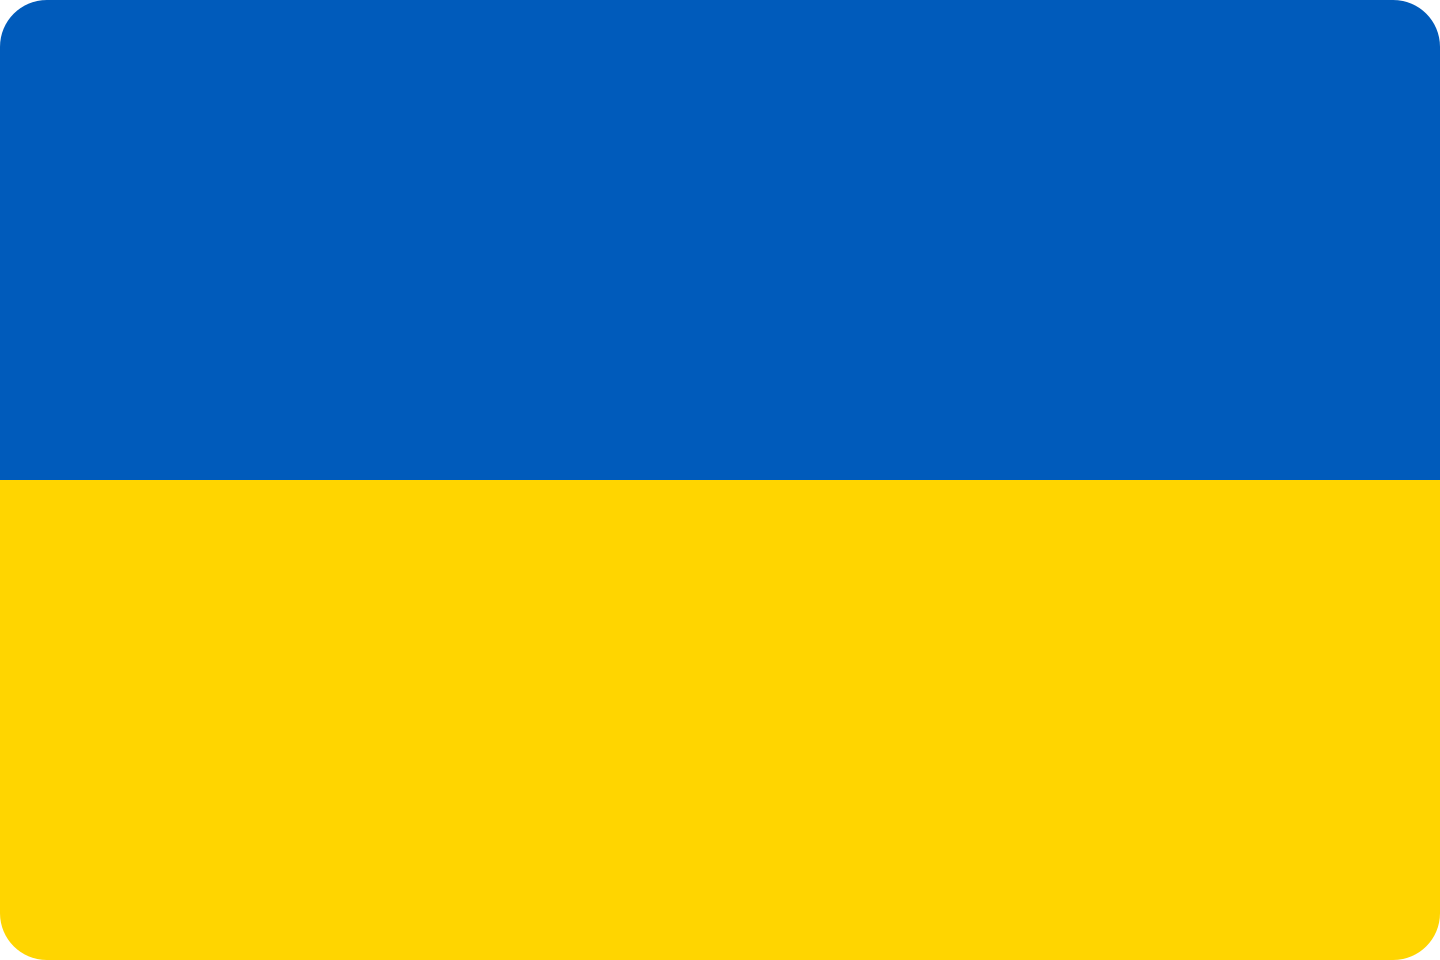 Bandeira da Ucrânia, Ukraine Flag.